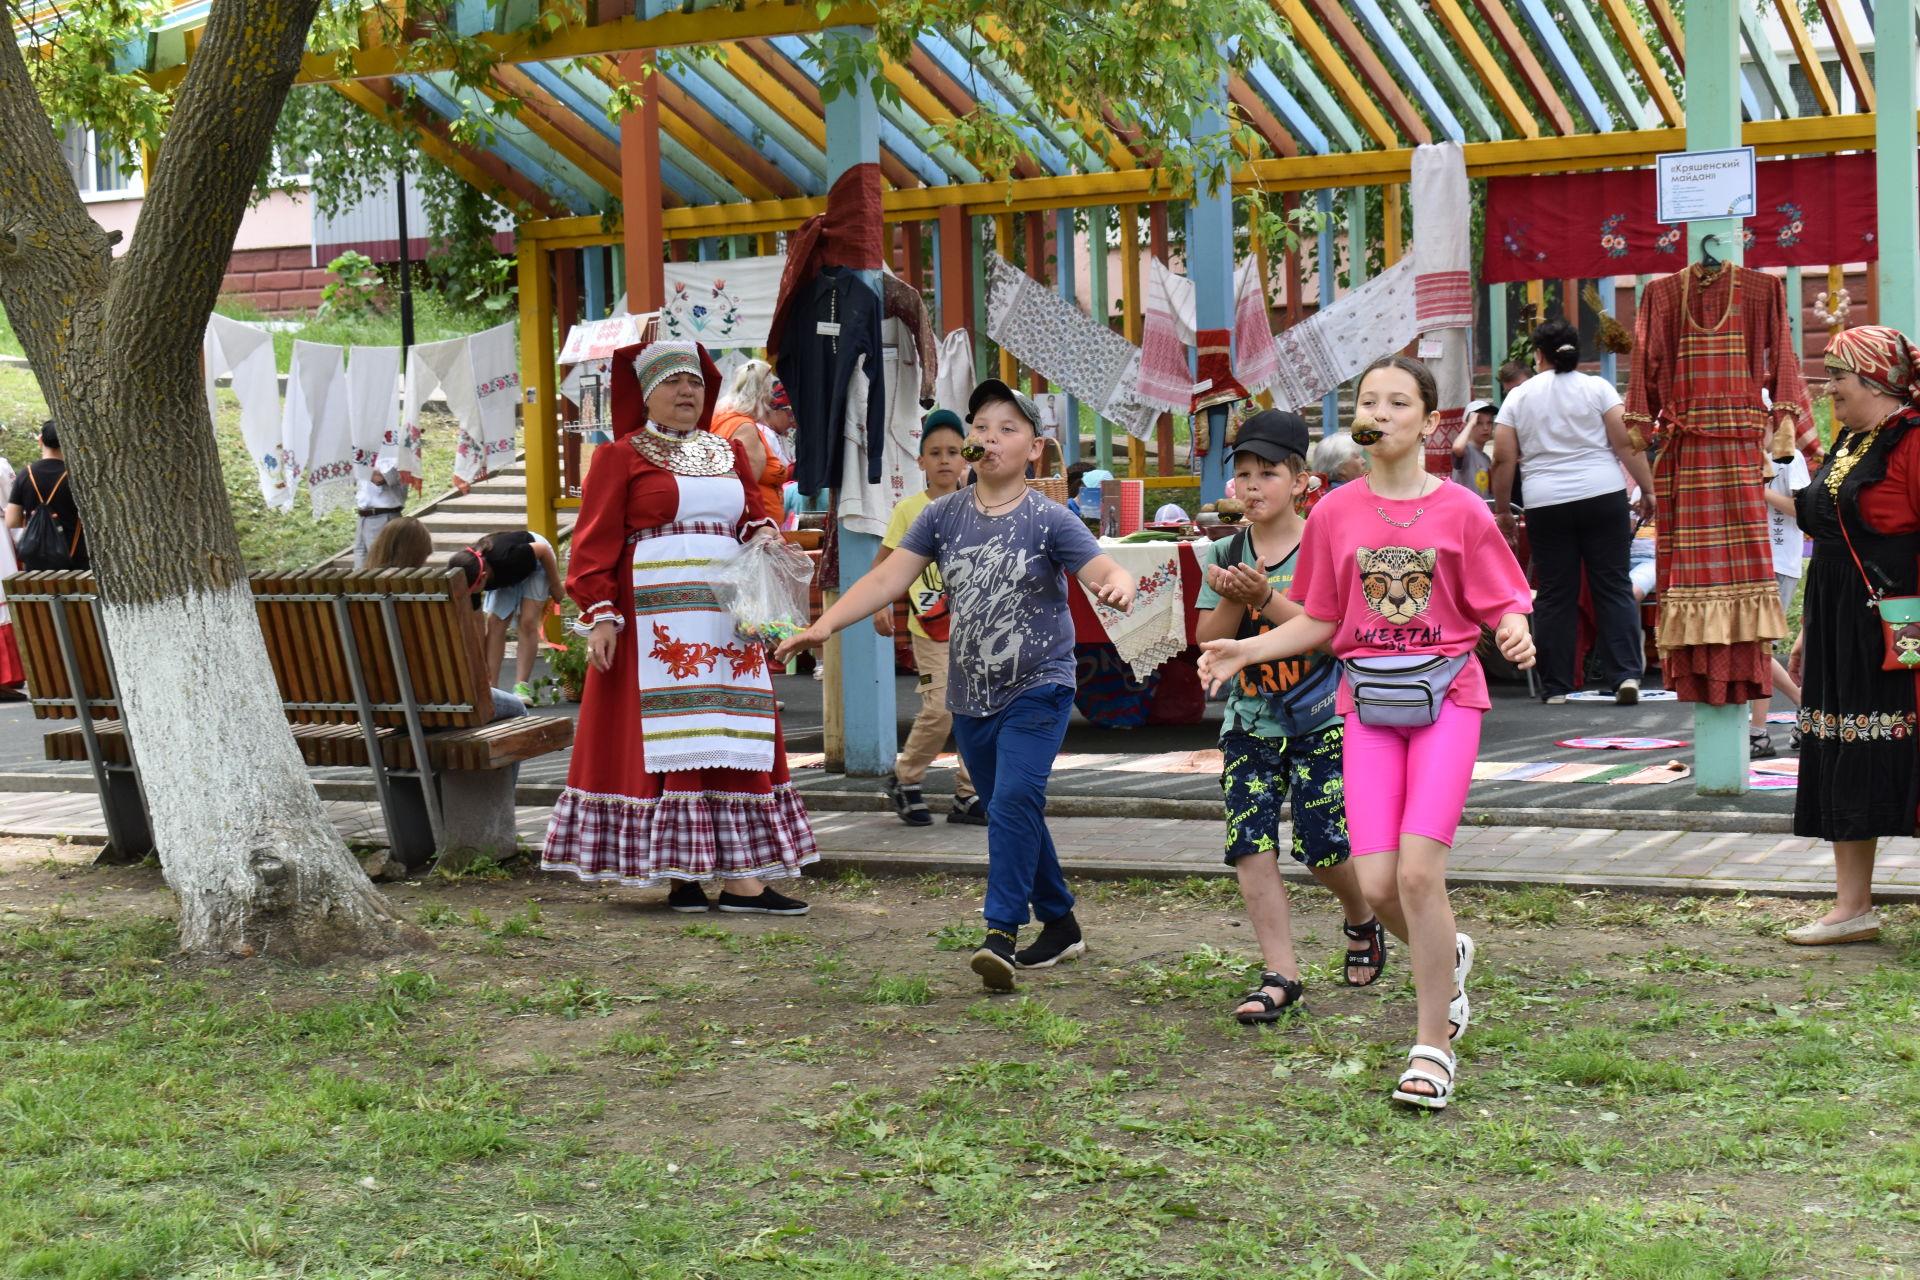 В Камских Полянах состоялся книжный фестиваль "Библиотека без границ"